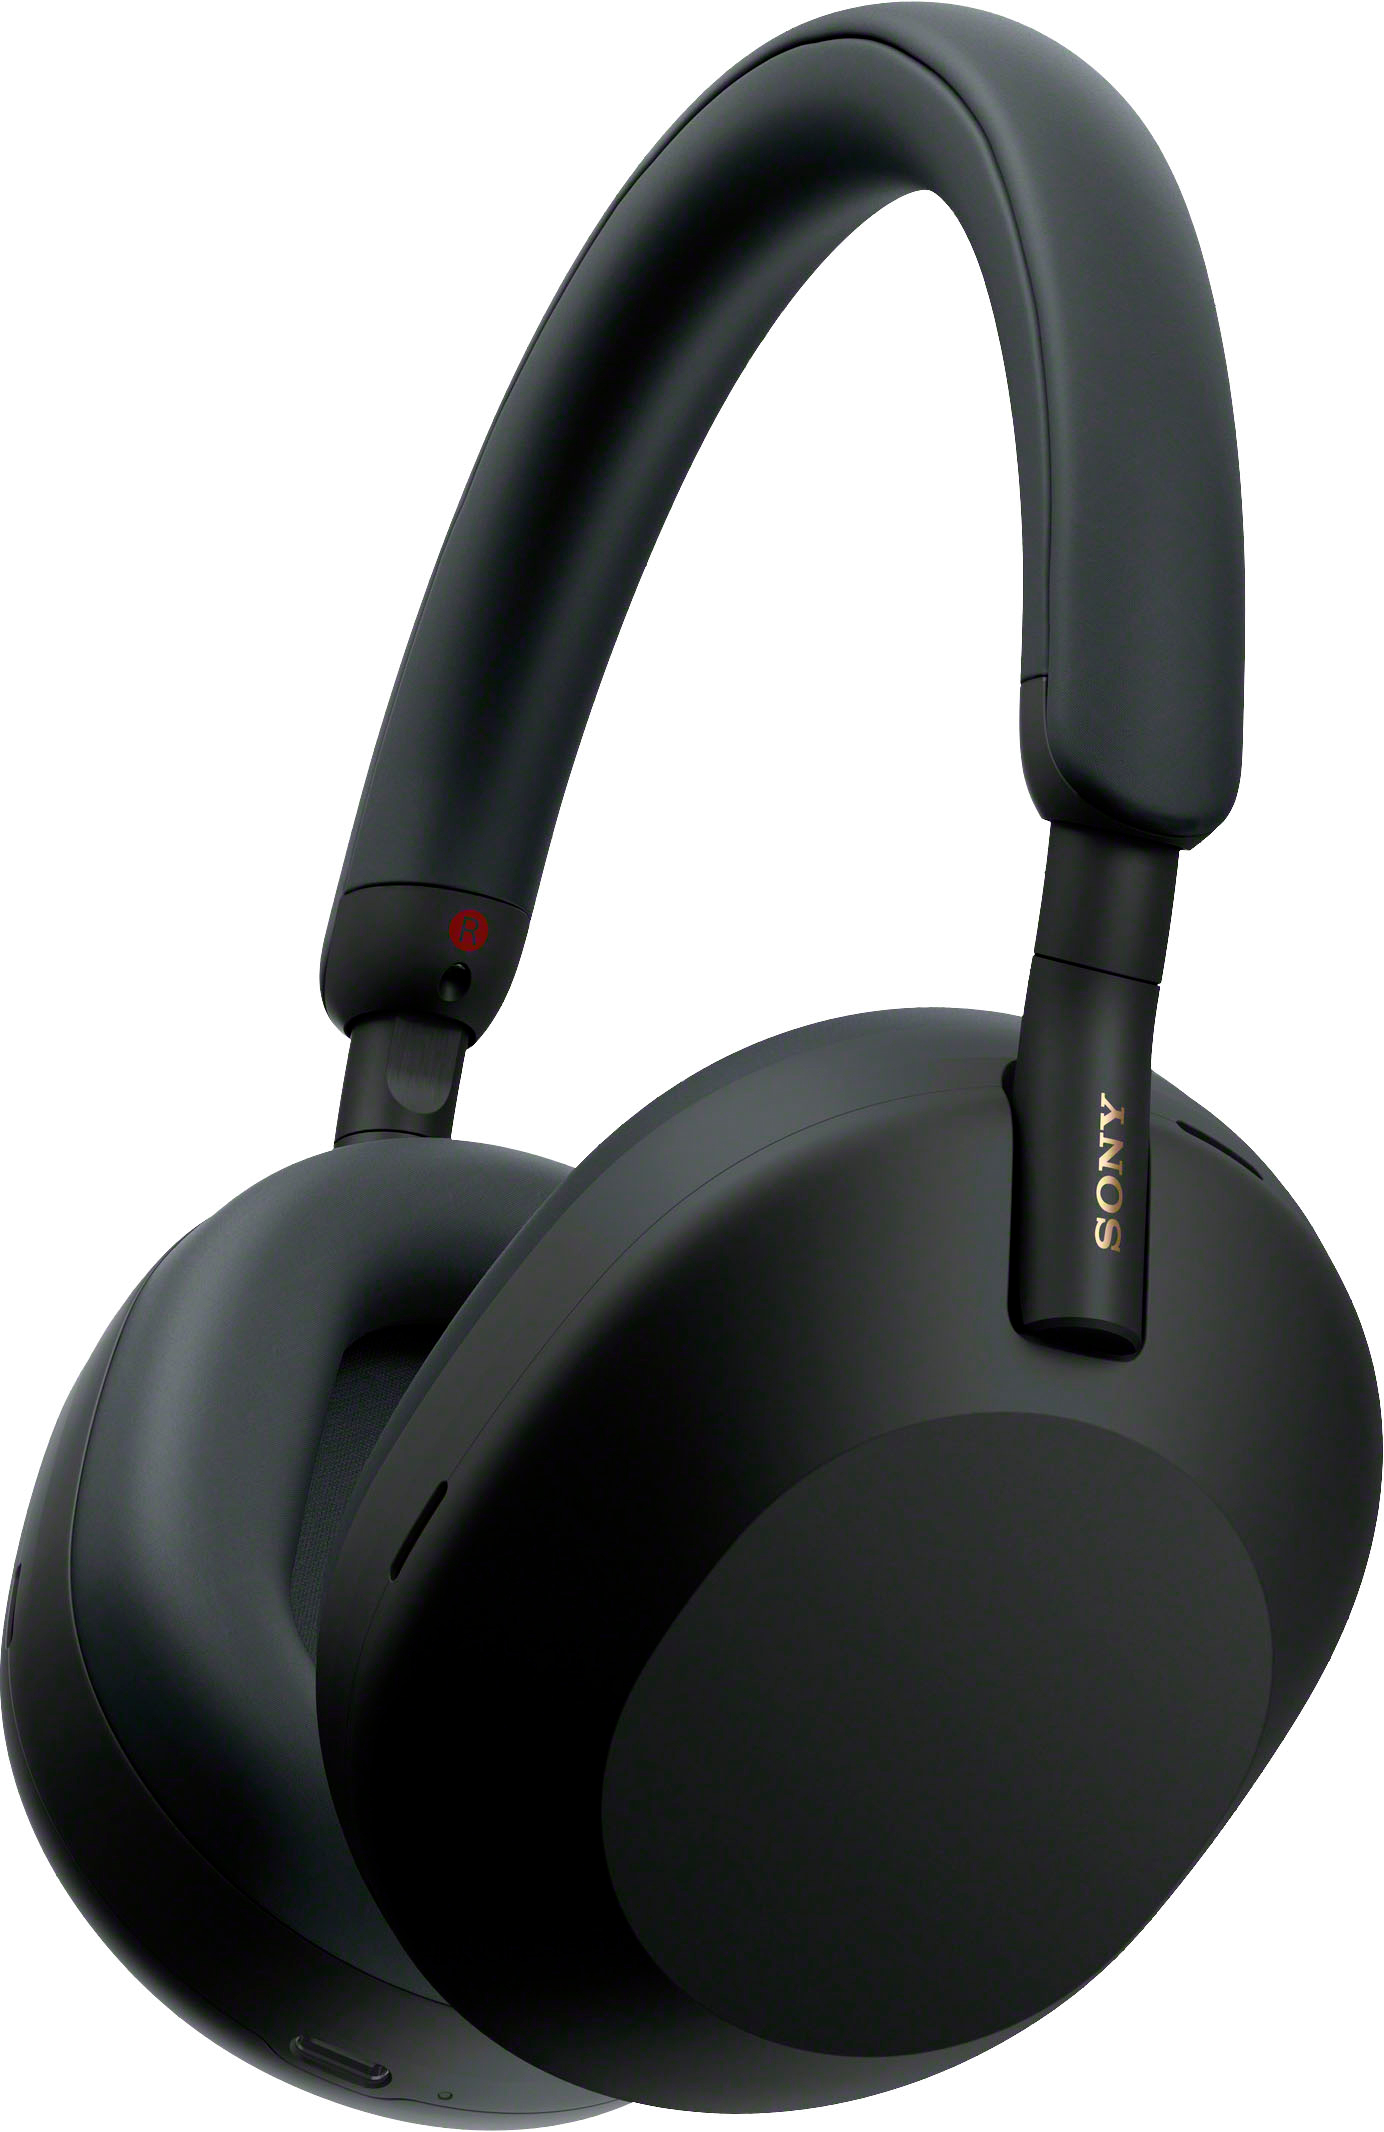 オーディオ機器 ヘッドフォン Sony WH-1000XM5 Wireless Noise-Canceling Over-the-Ear 